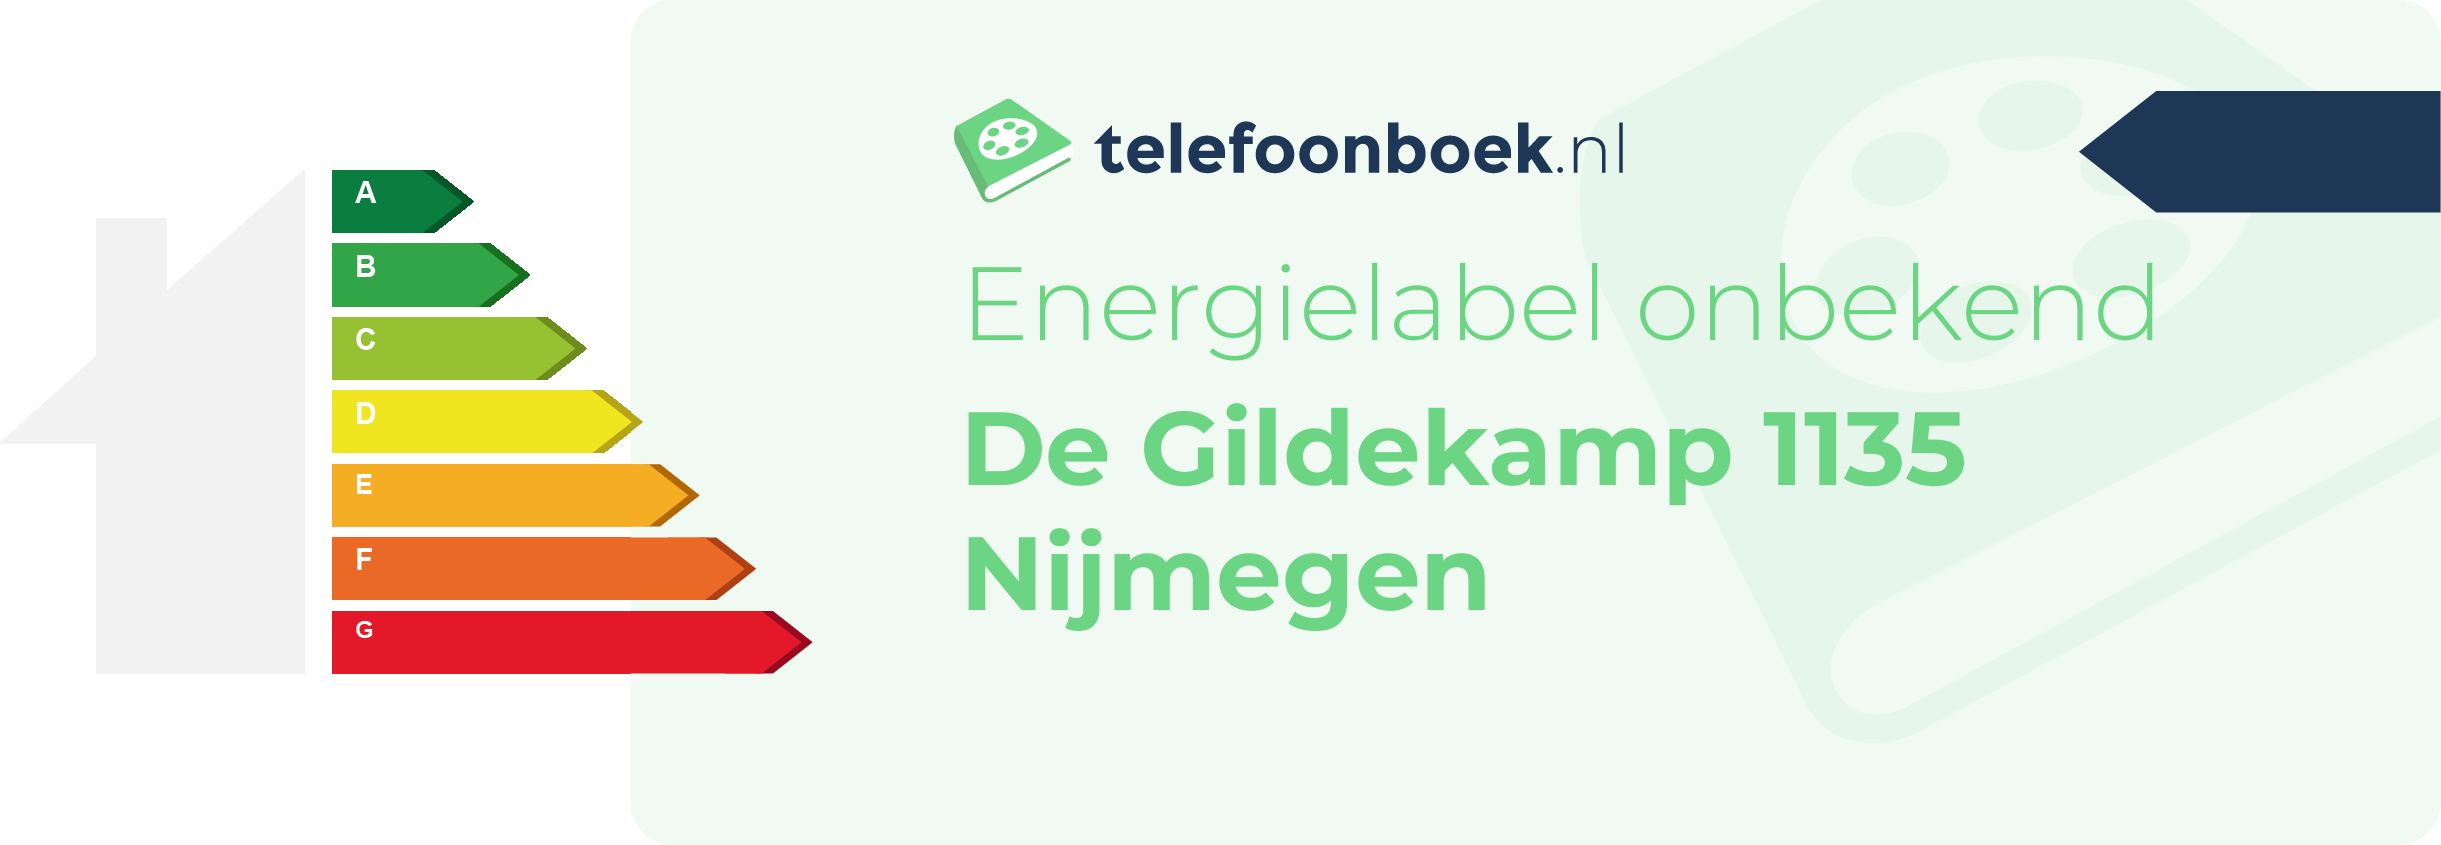 Energielabel De Gildekamp 1135 Nijmegen